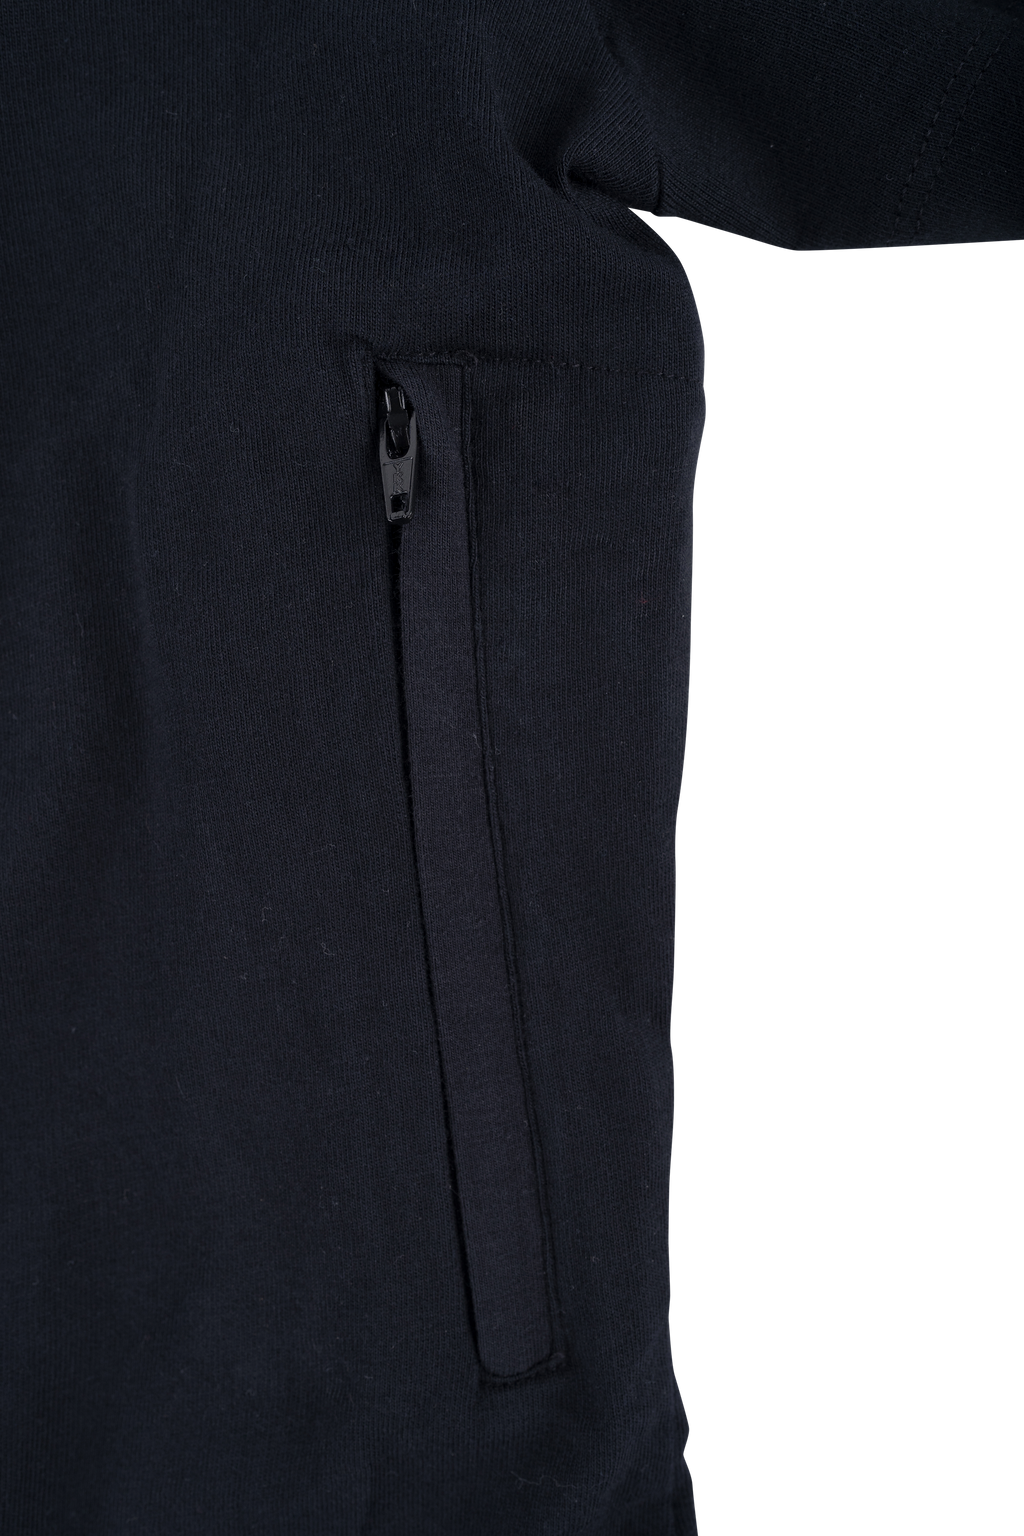 Women's Pickpocket Proof T-shirt Dress with Secret Zipper Pockets – The ...